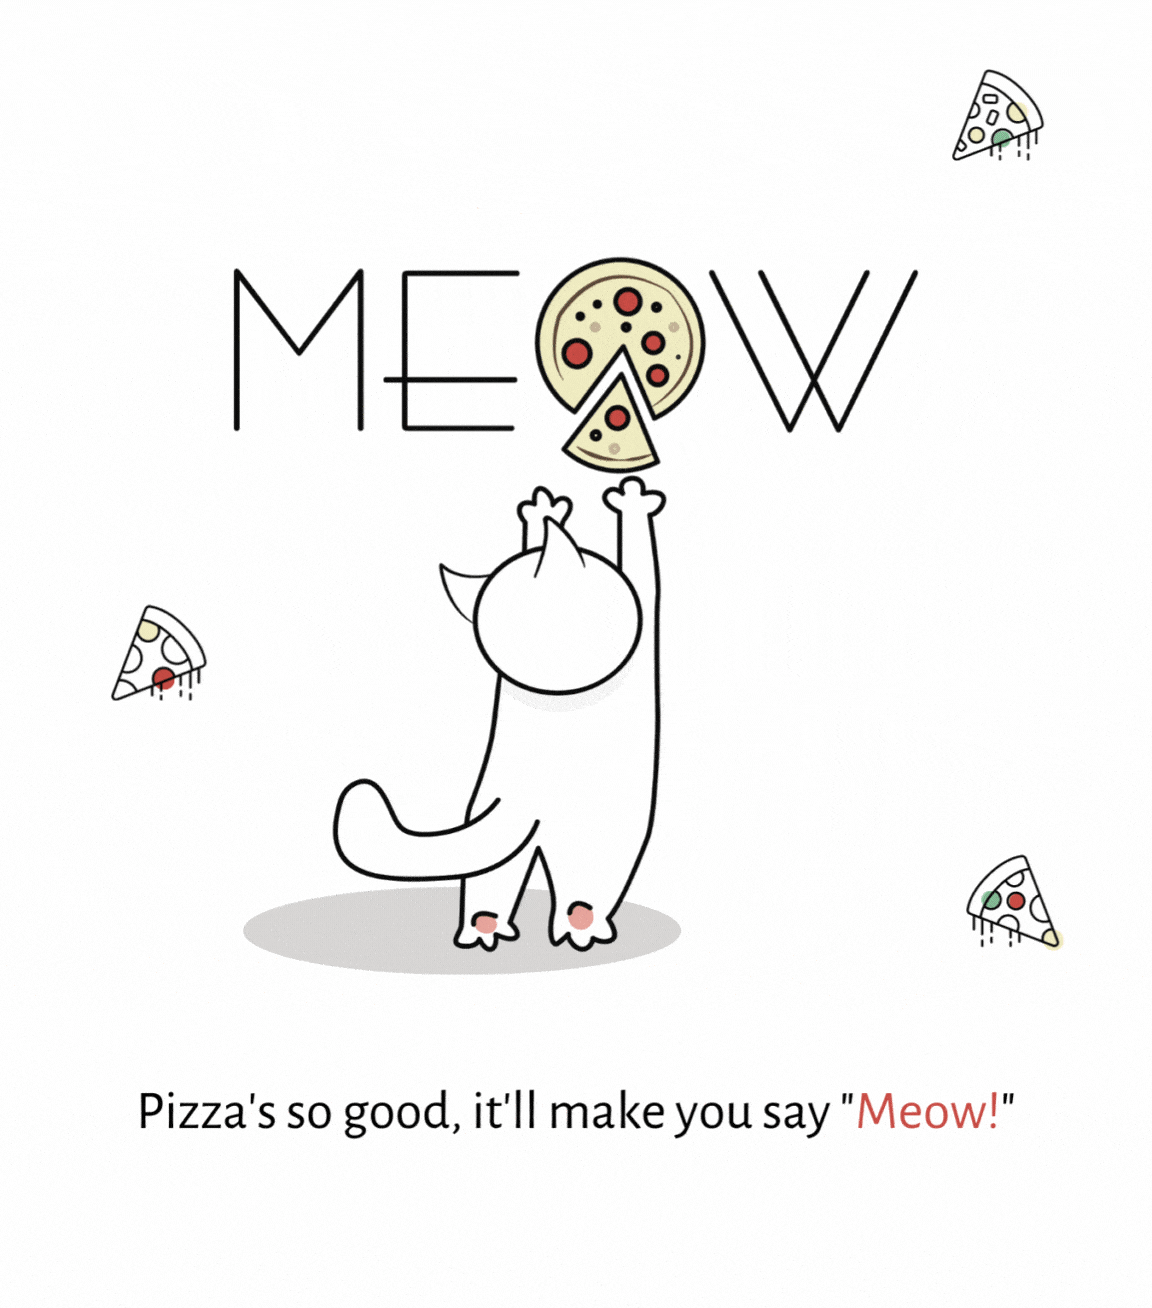 Meow Pizza Branding for restaurant